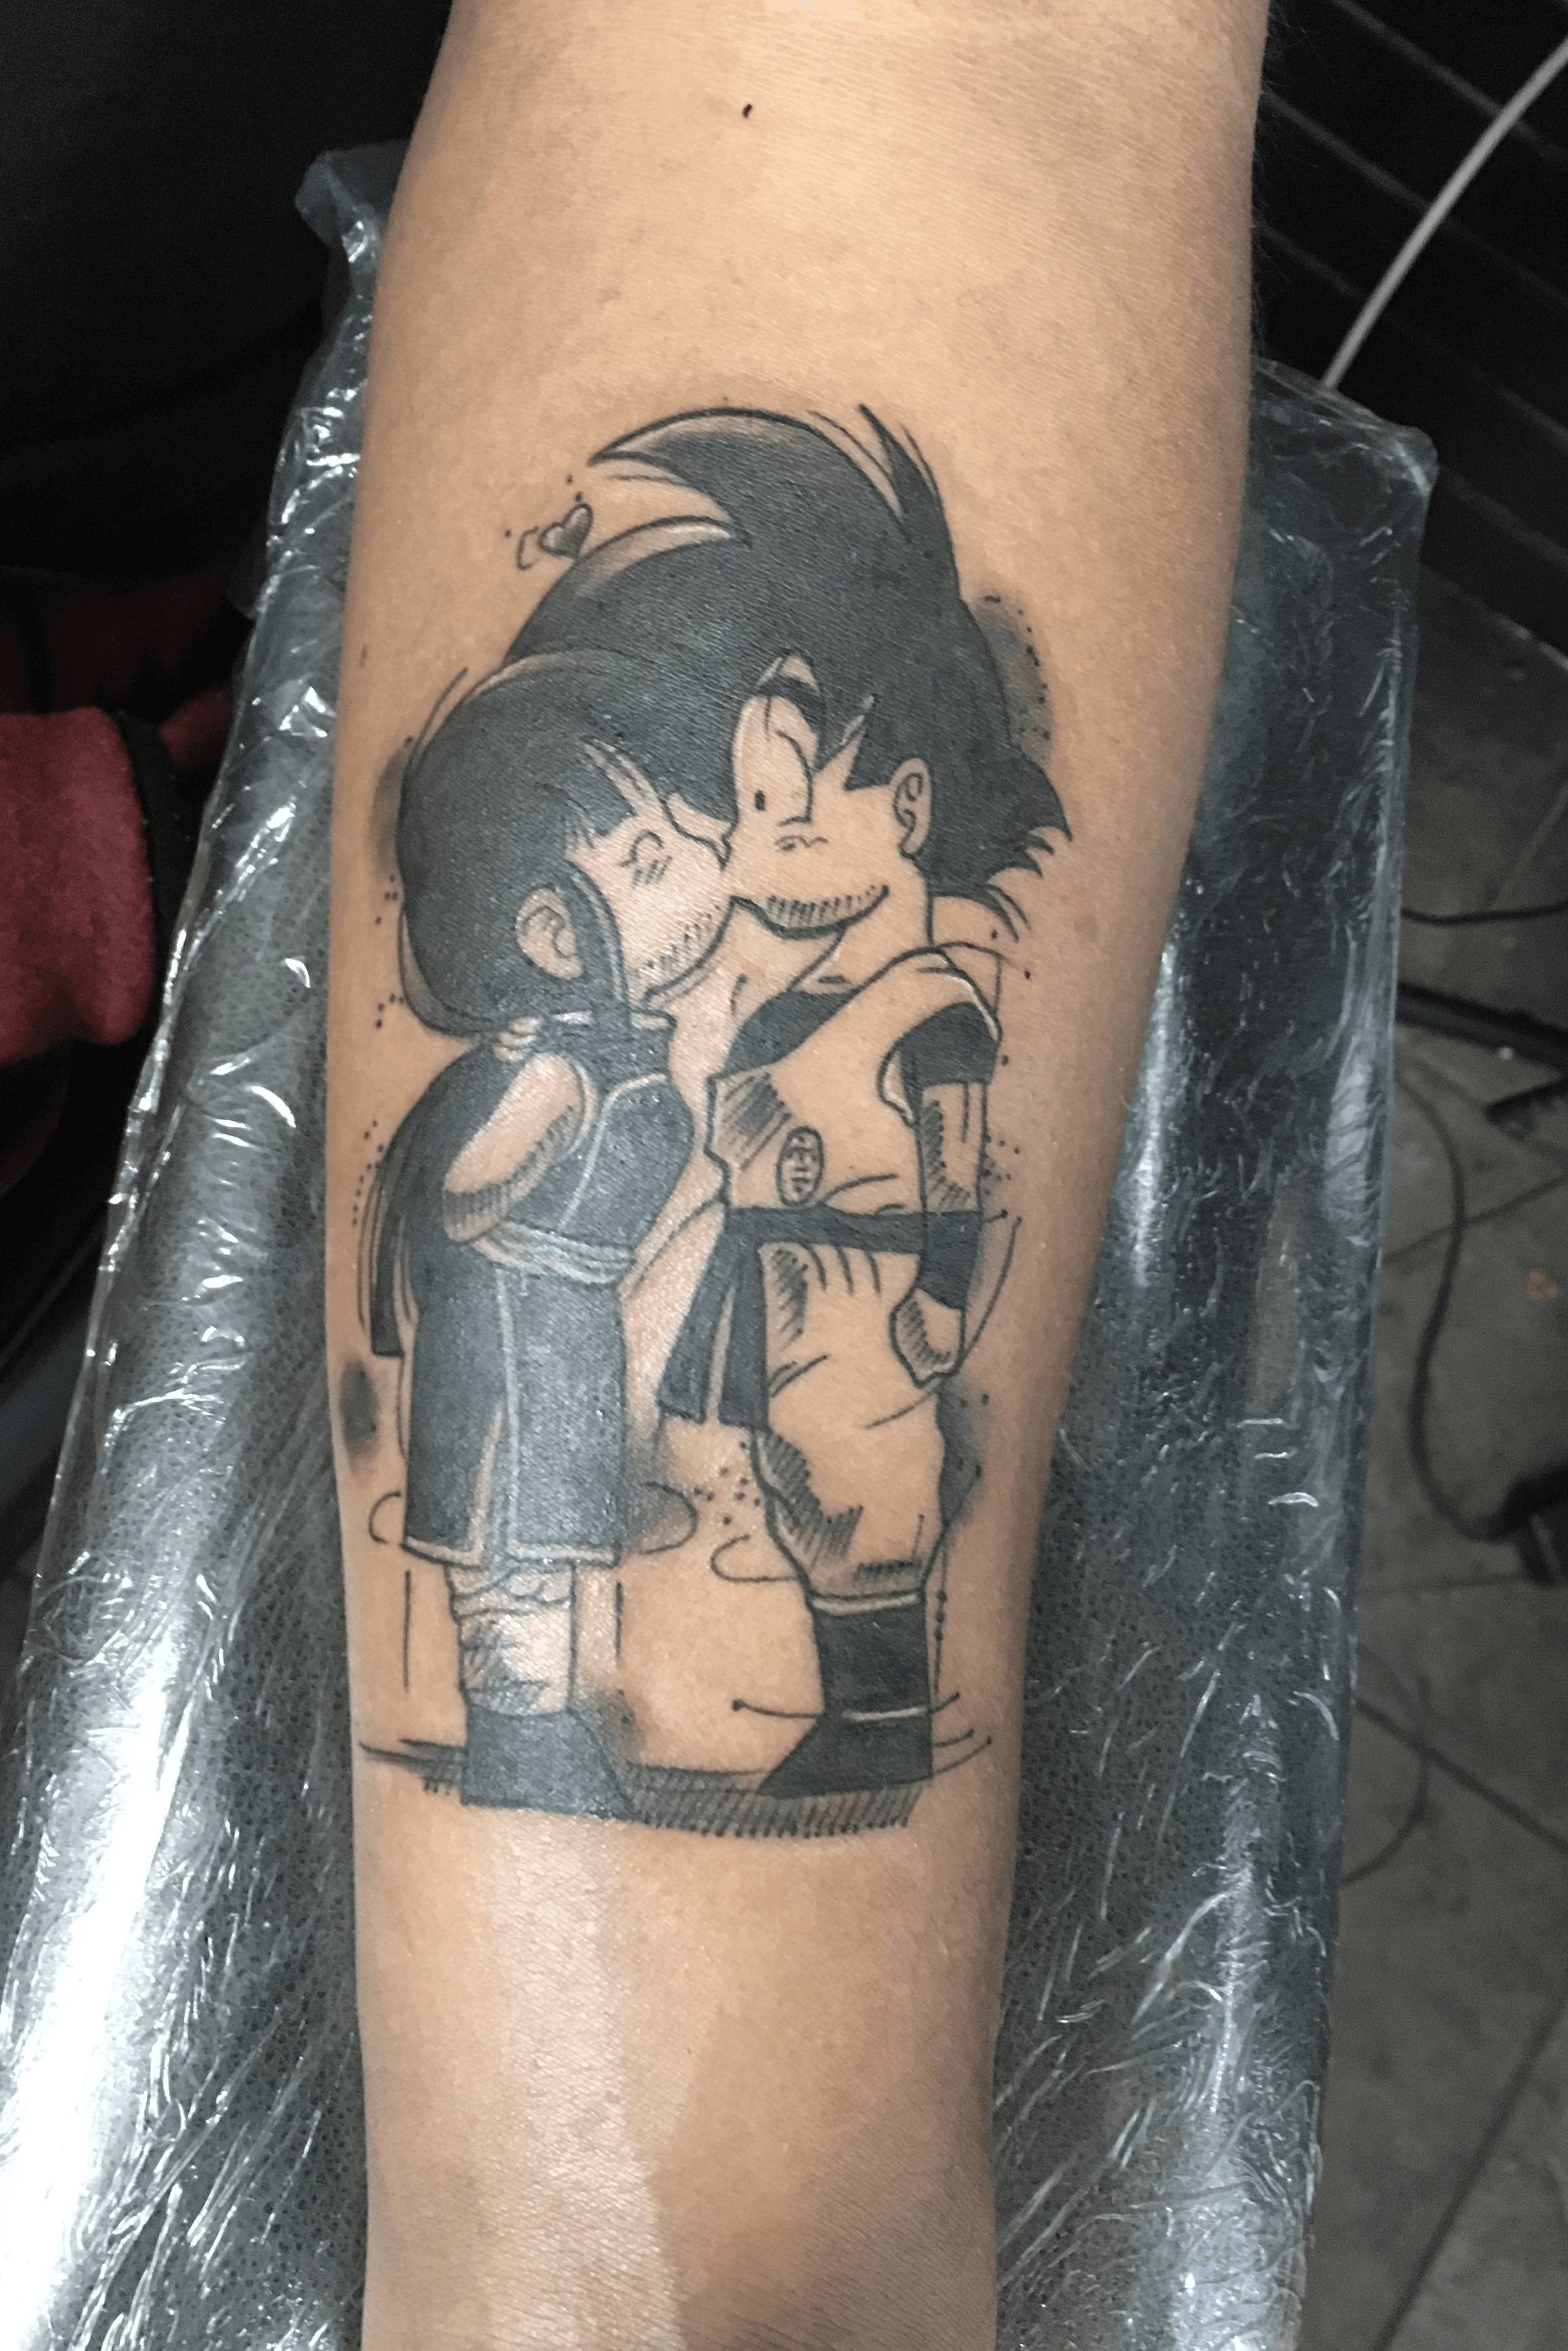 15 Cool Dragon Ball Z Tattoos Only Fans Will Get  Body Art Guru